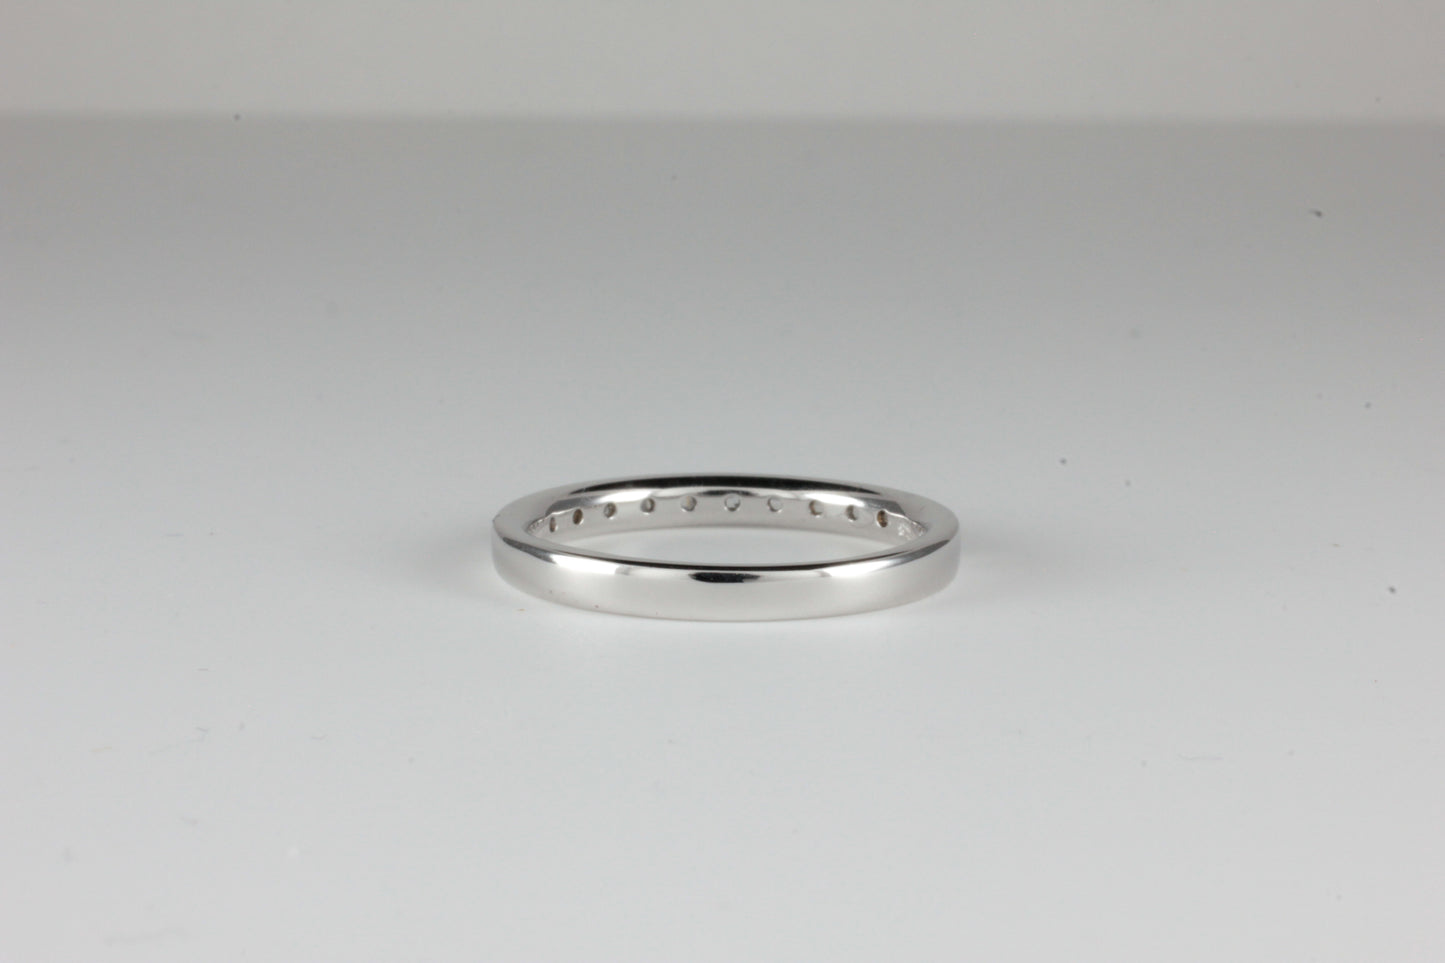 Platinum Eternity Art Deco Style Ring 0.33ct Baguette Cut Diamonds